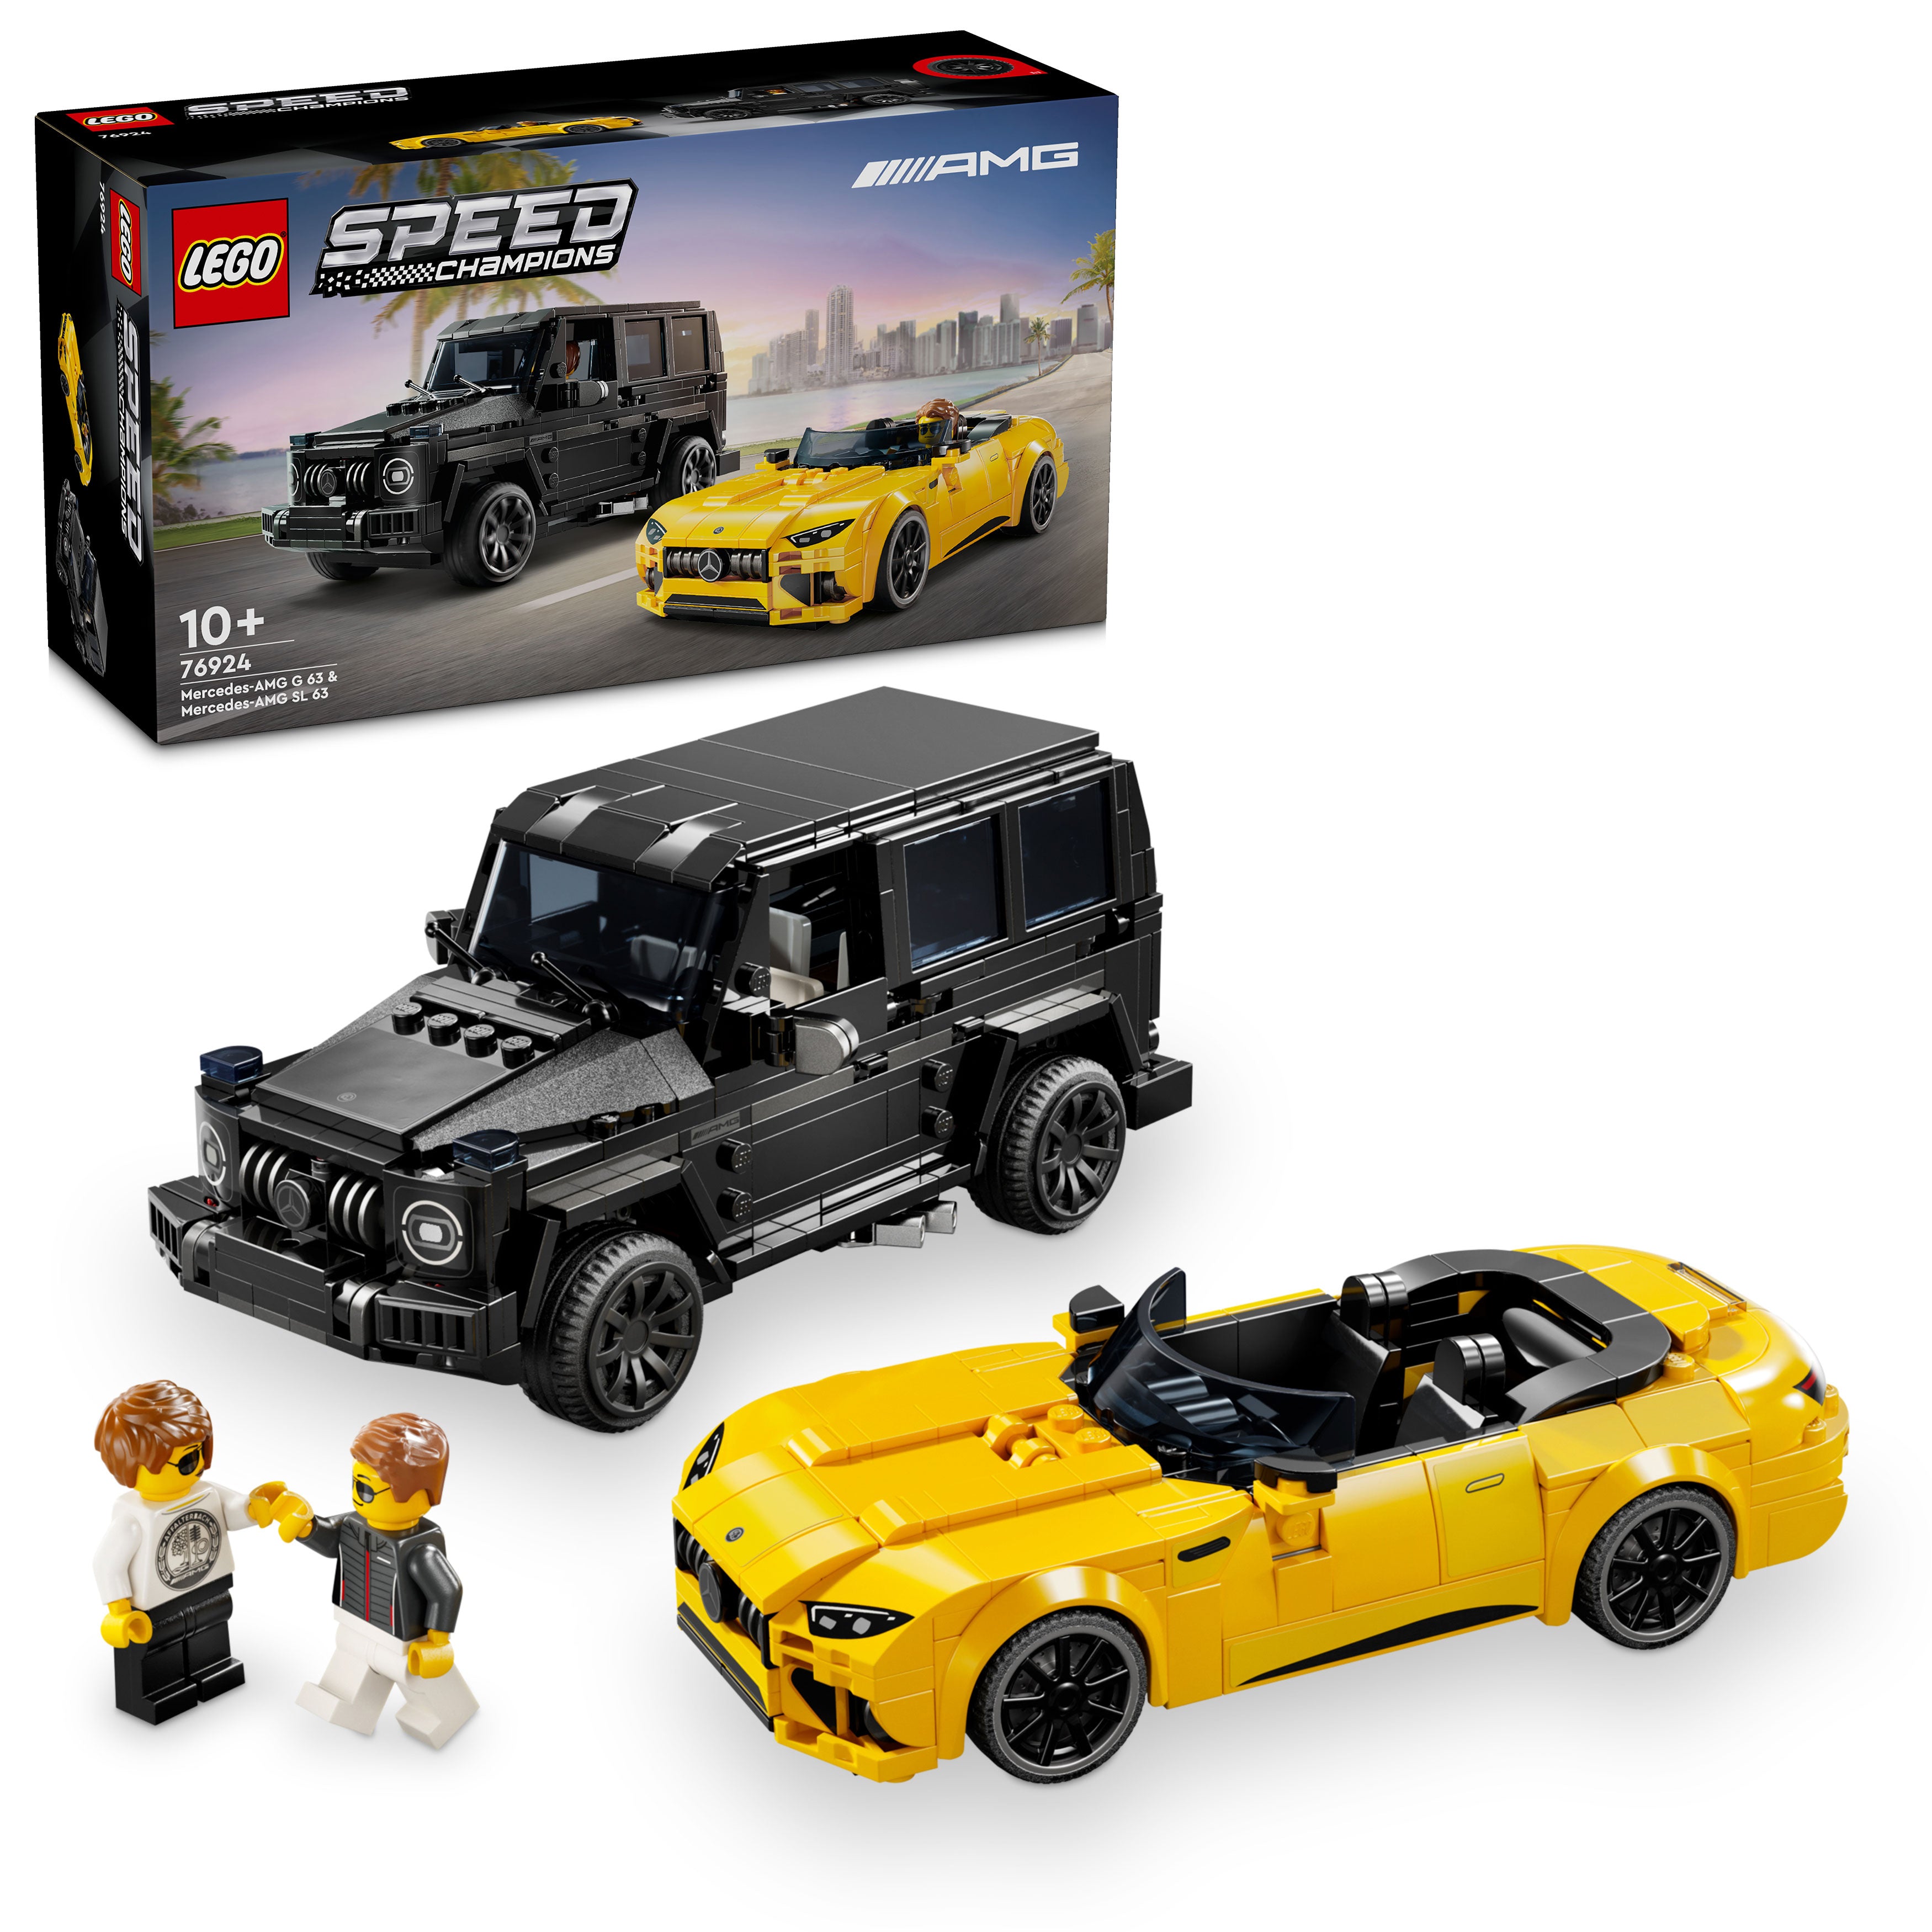 Lego 76924 Mercedes-AMG G 63 & Merc AMG SL63